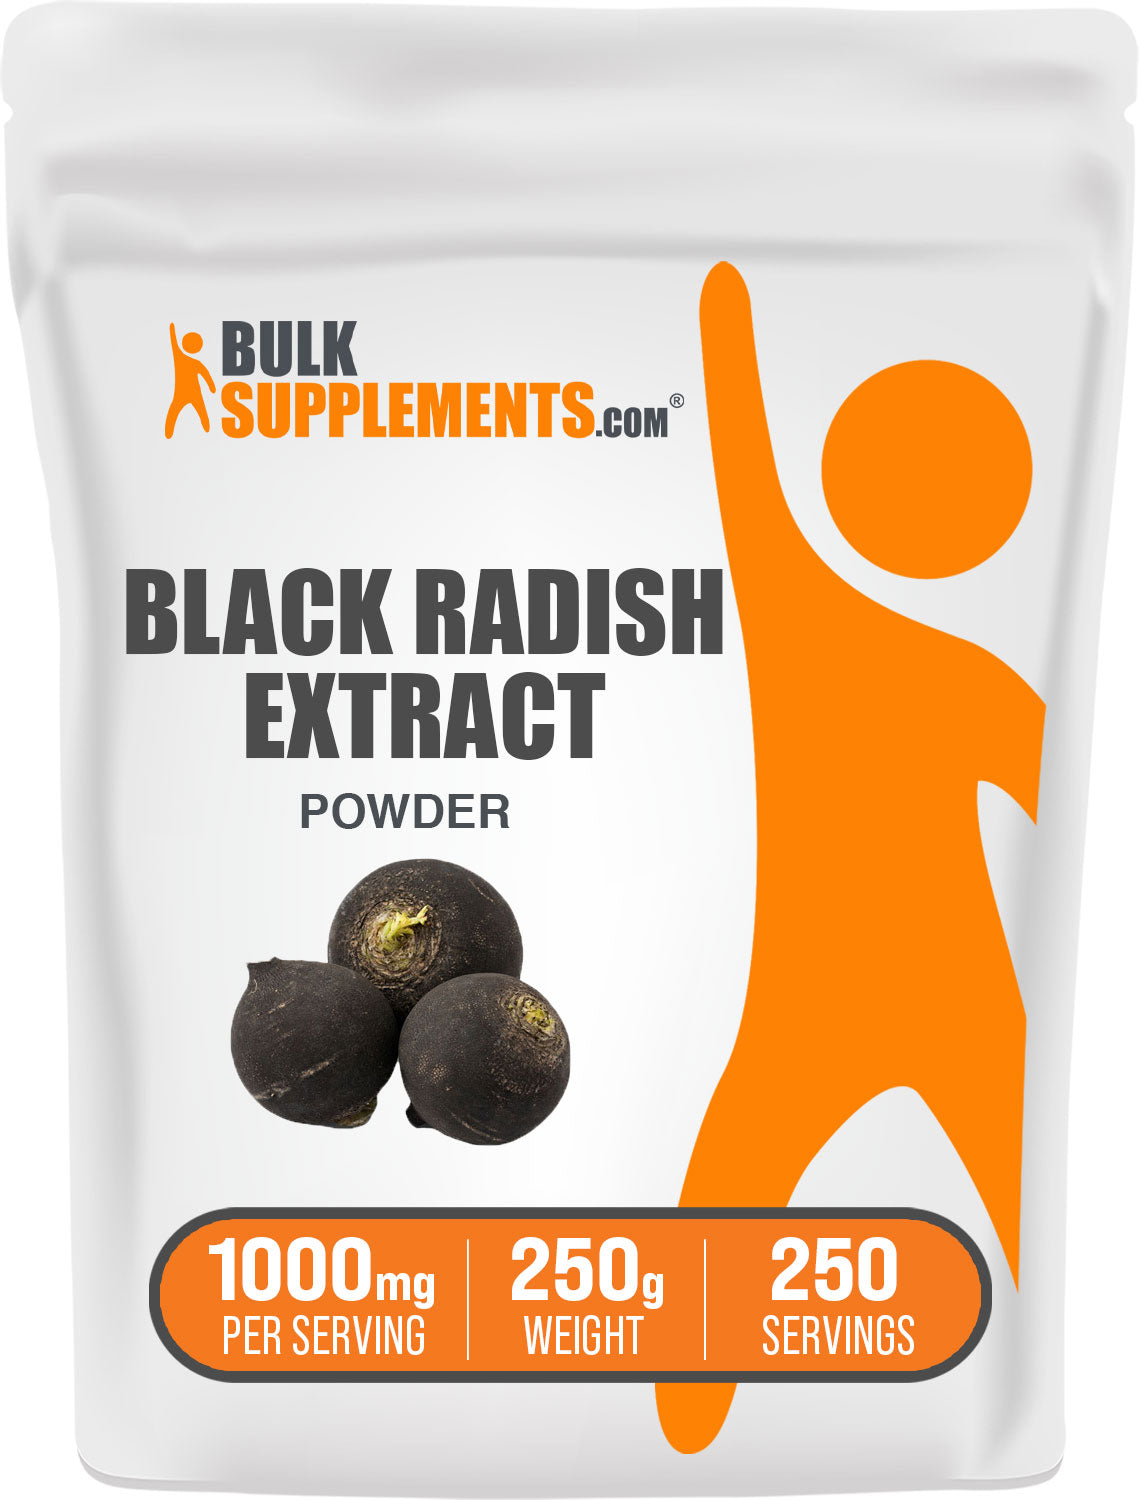 BulkSupplements.com Black Radish Extract Powder 250g Bag